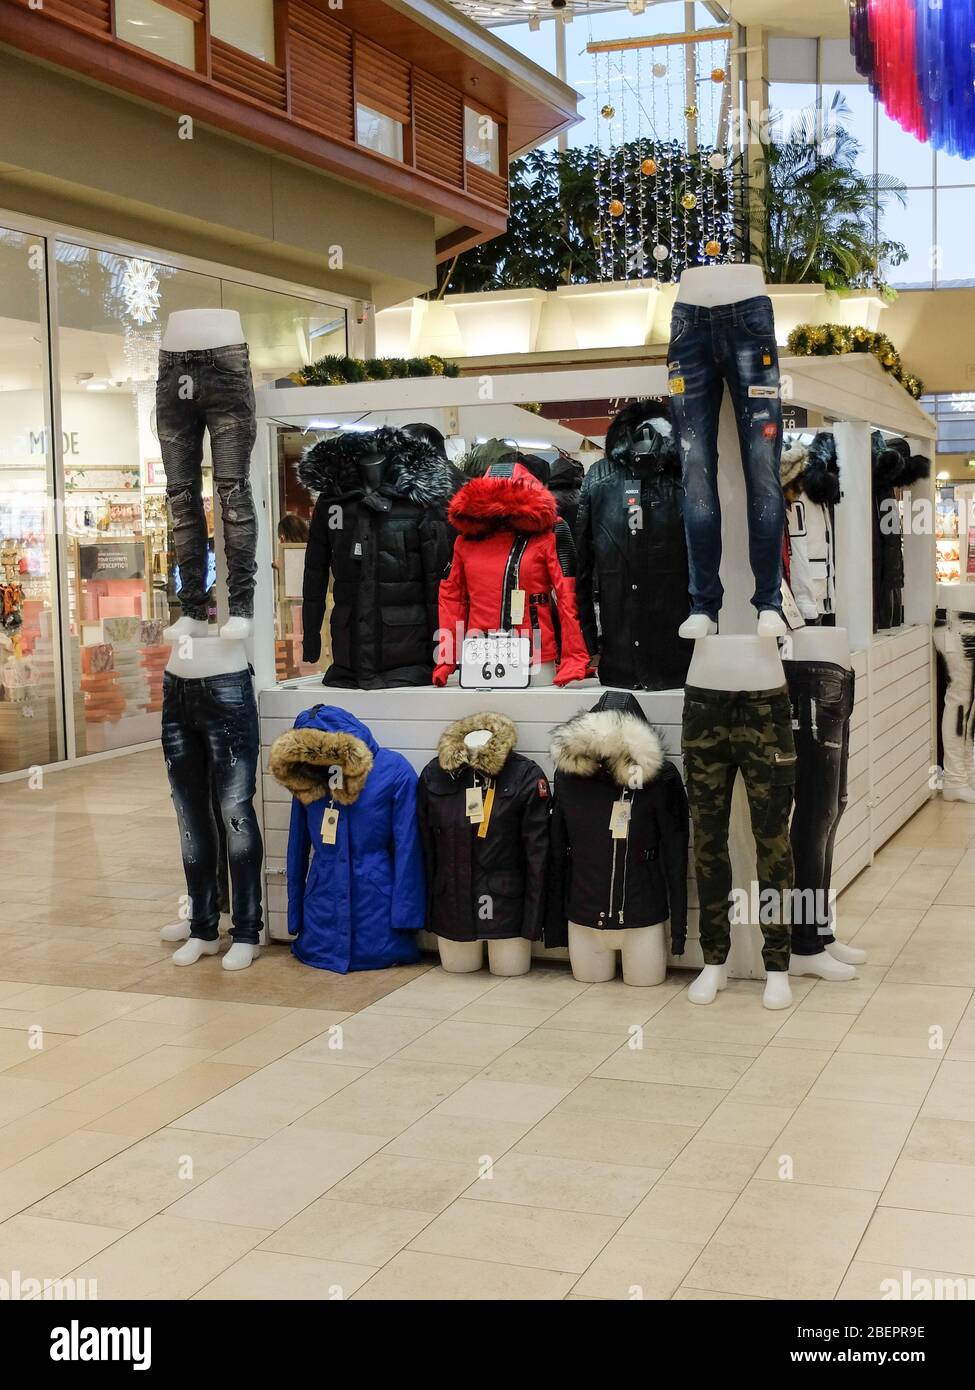 Kleiner Bekleidungsmarkt: Pullover, Jacken, Jeans, etc. In einem Einkaufszentrum Stockfoto